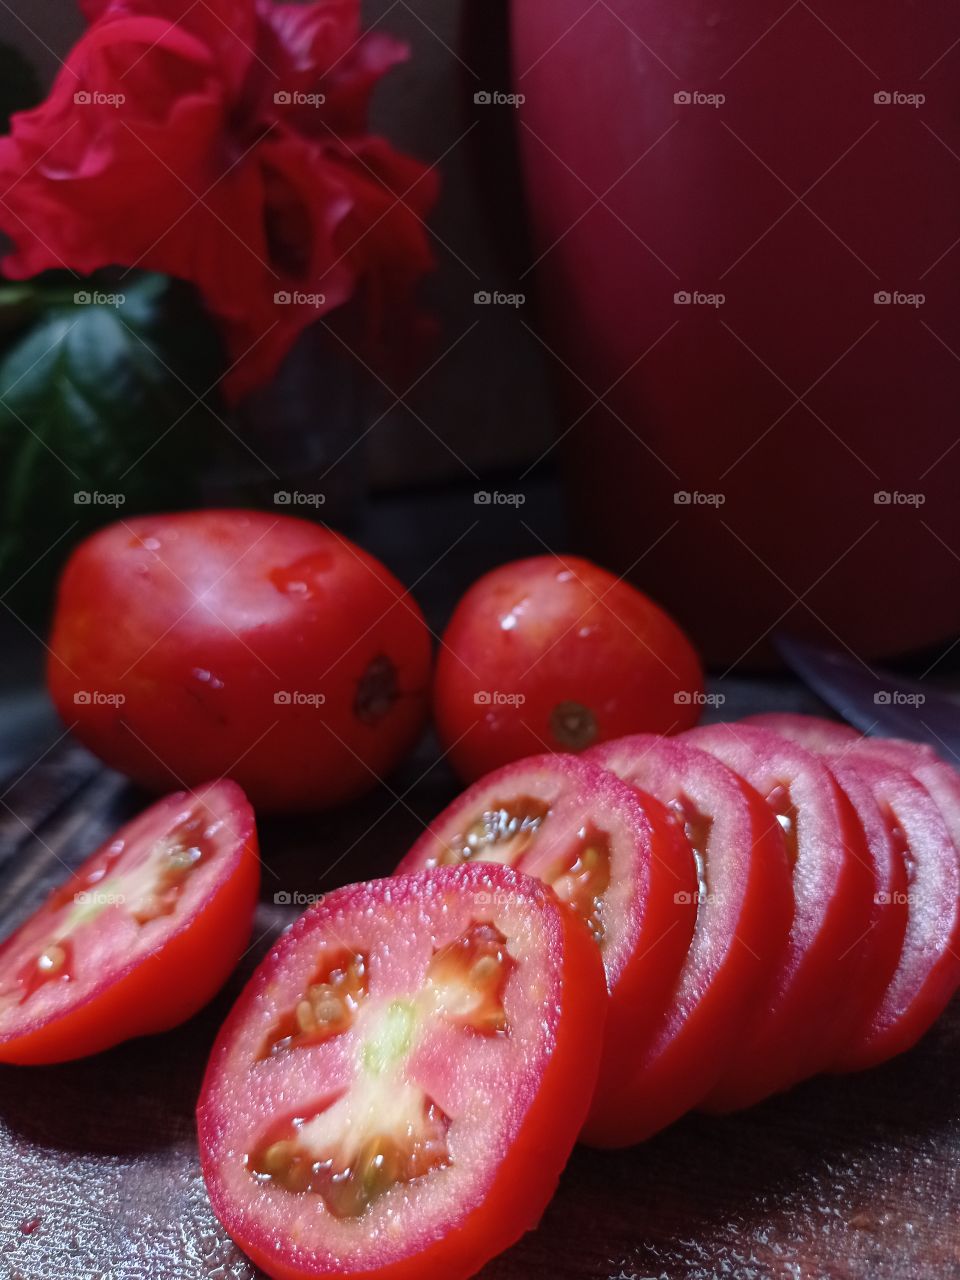 Red veg